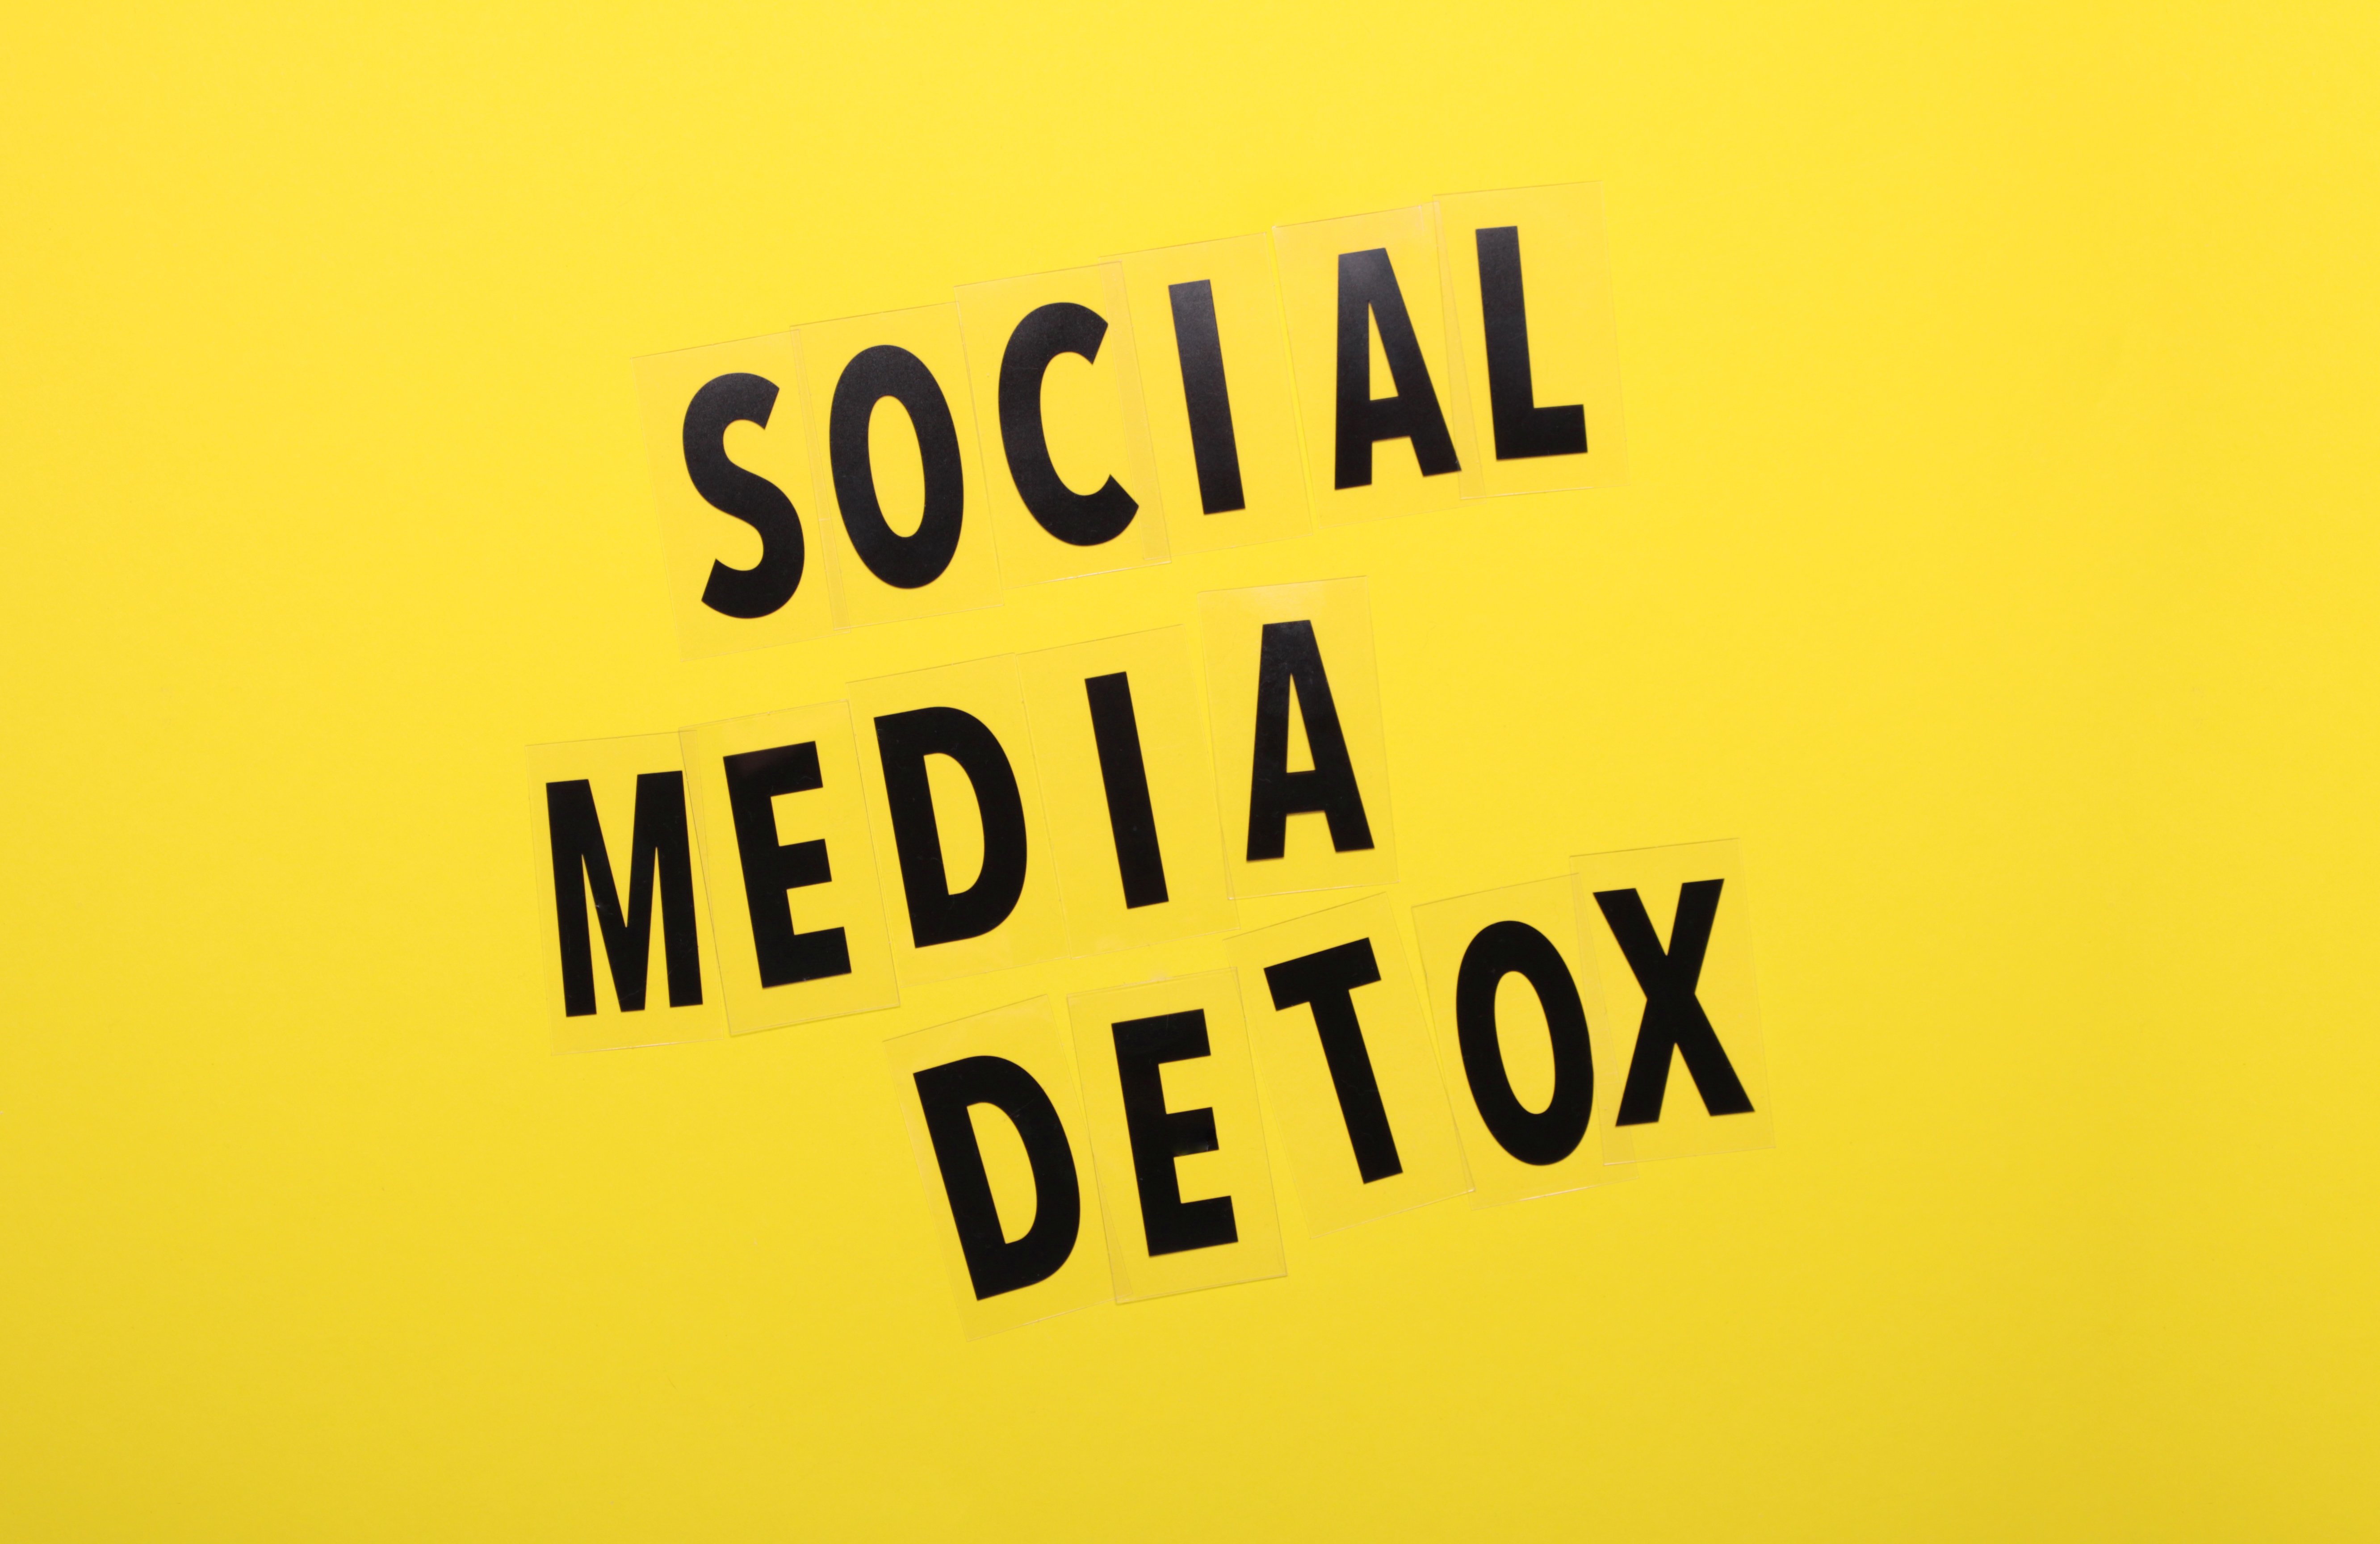 Social-Media-Detox